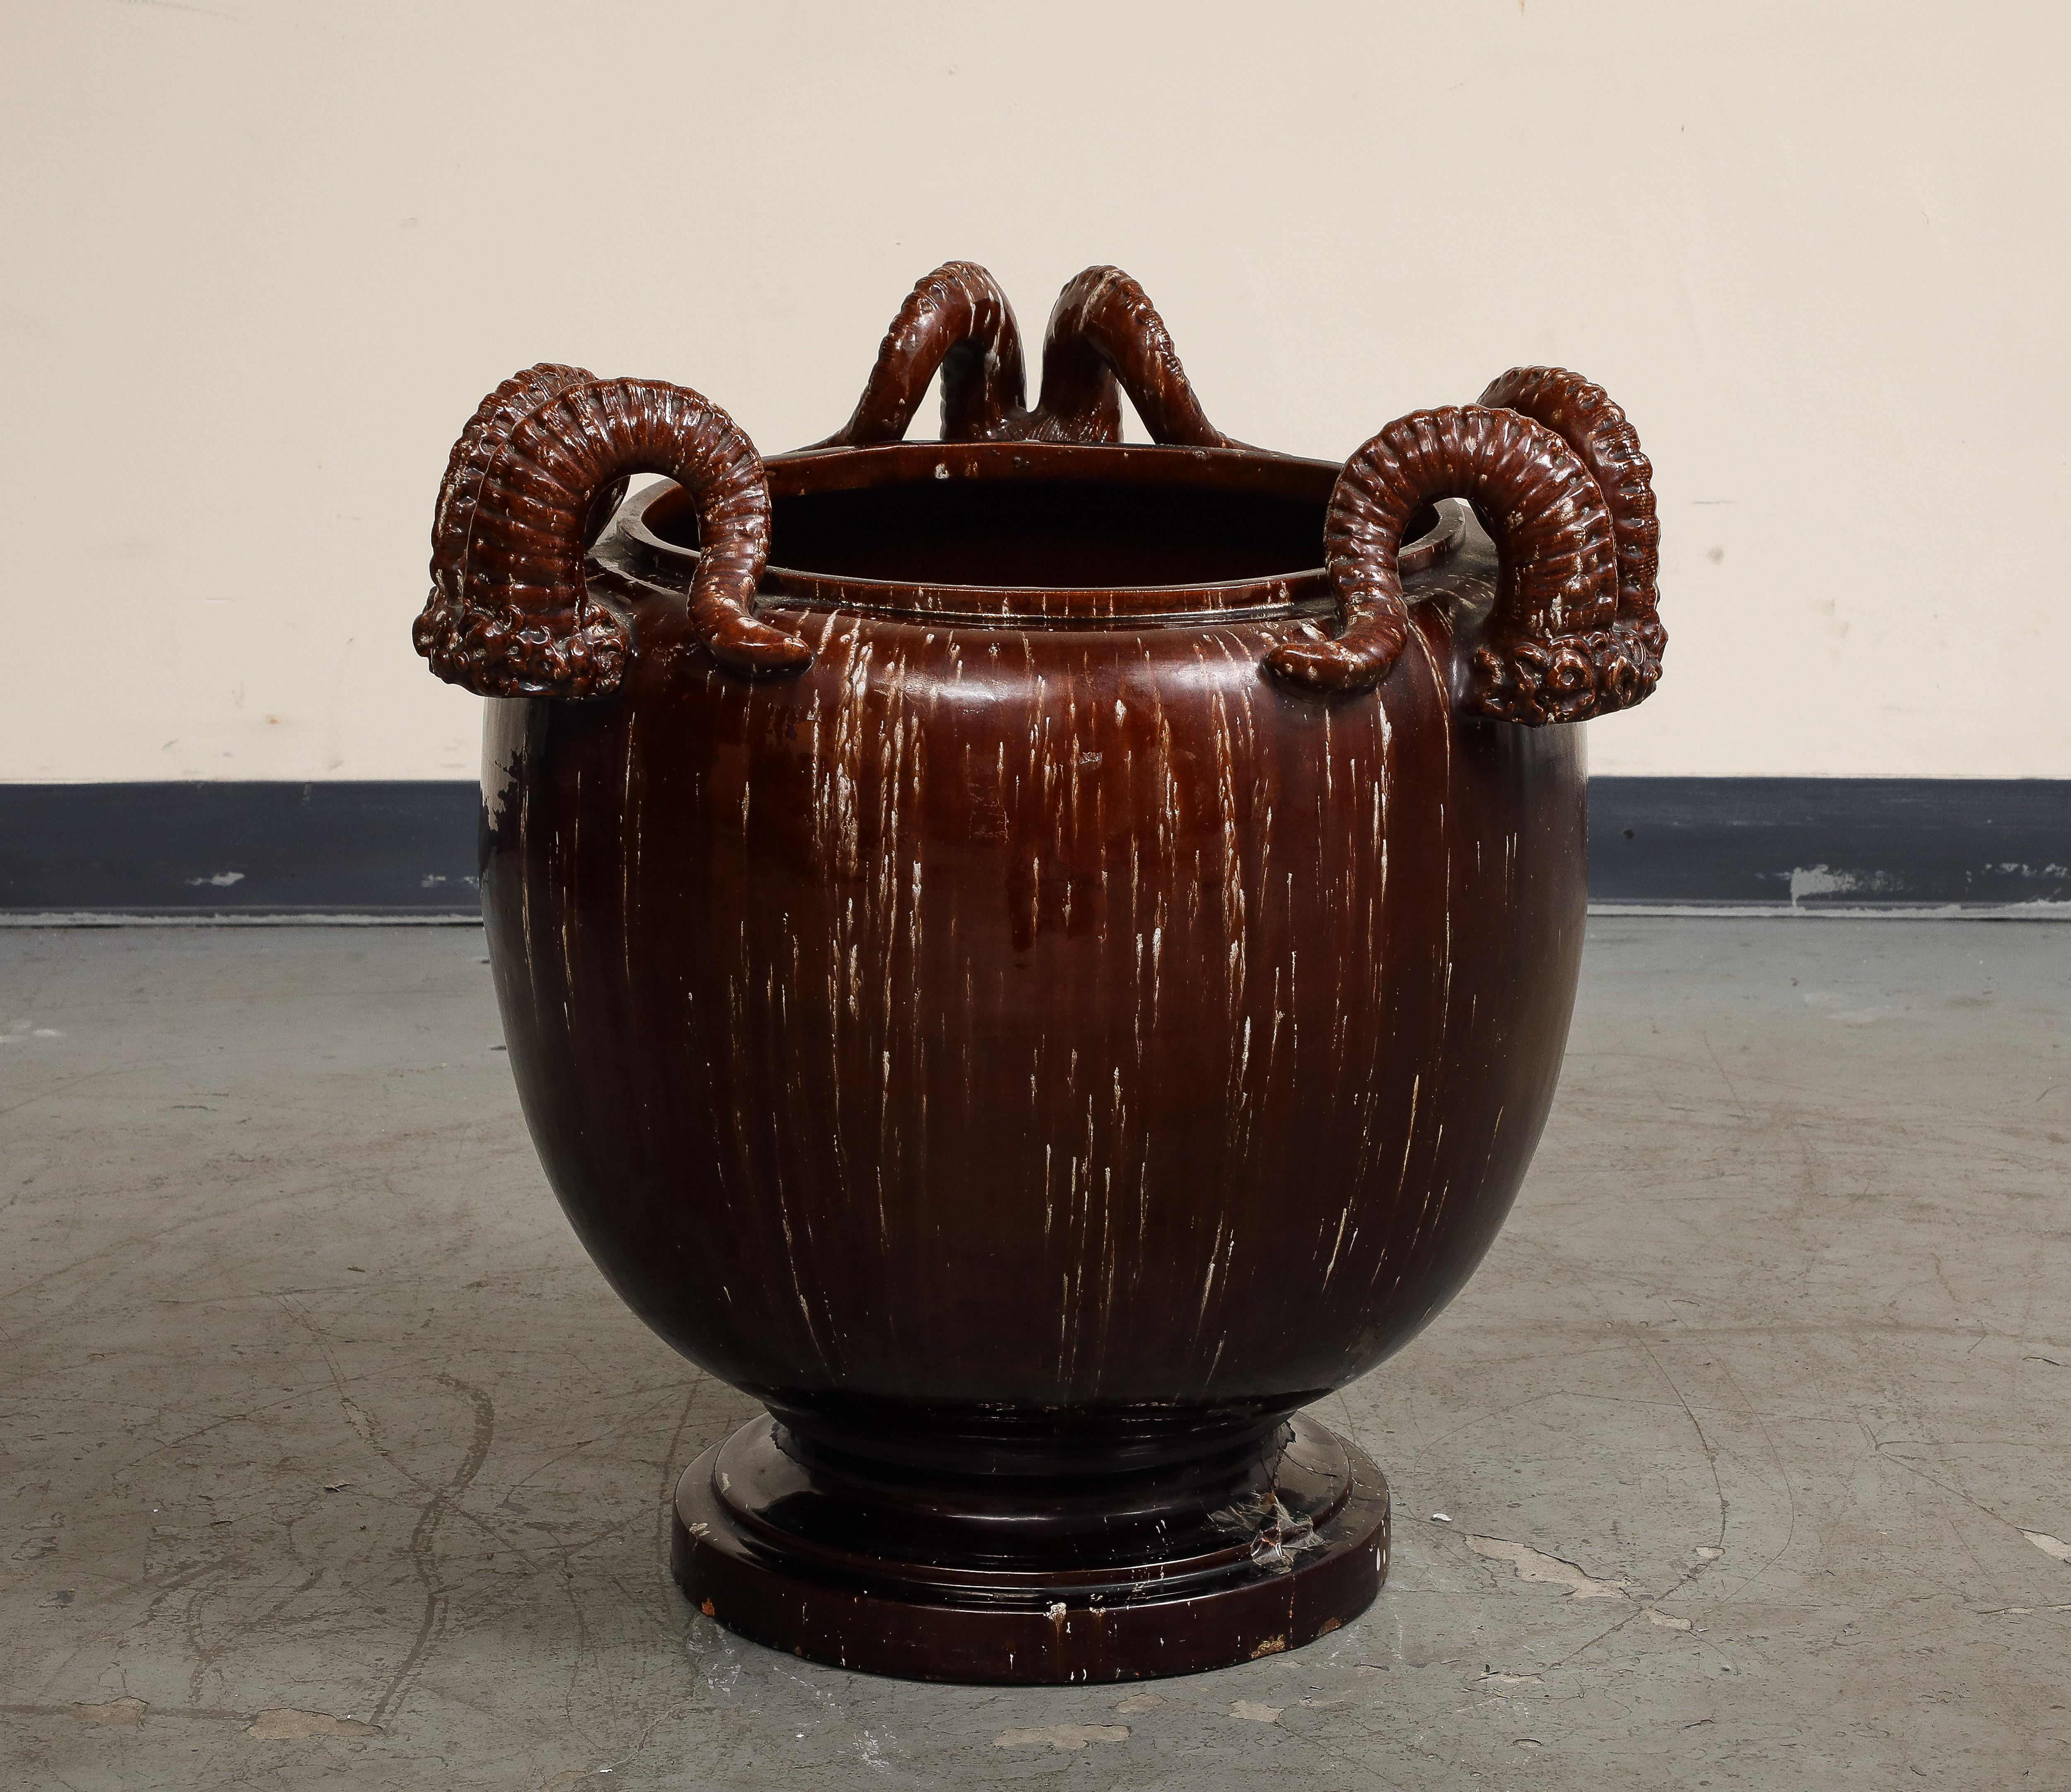 Burgund glasierte chinesische Keramik Jardiniere mit Widderhörnern, 20. Jahrhundert. 

Öffnung 14 3/4